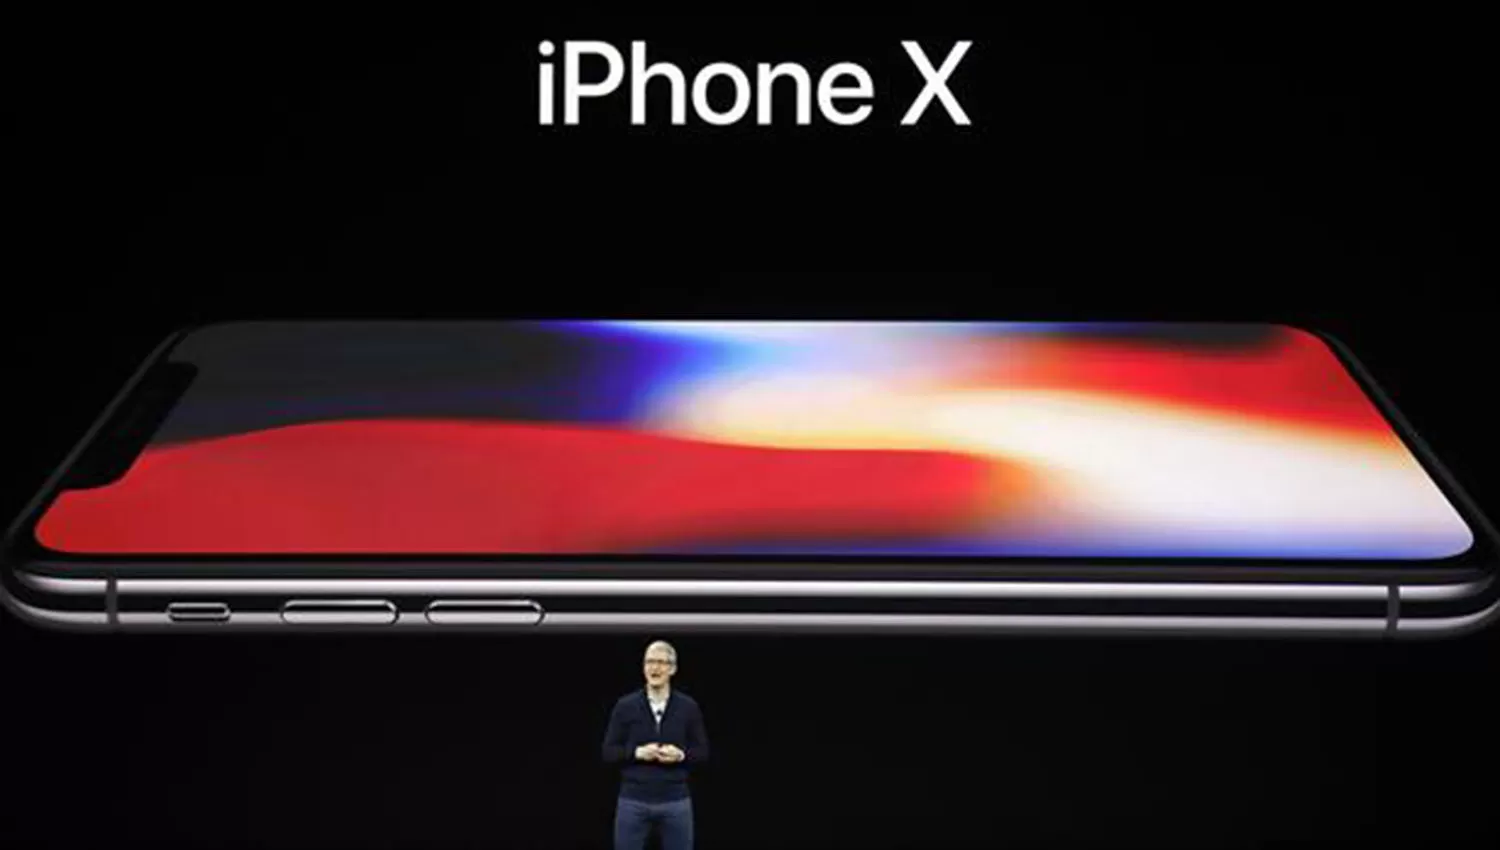 El iPhone X tendrá un precio base de U$S 999 para la versión de 64 GB de almacenamiento. FOTO TOMADA DE LANACION.COM.AR